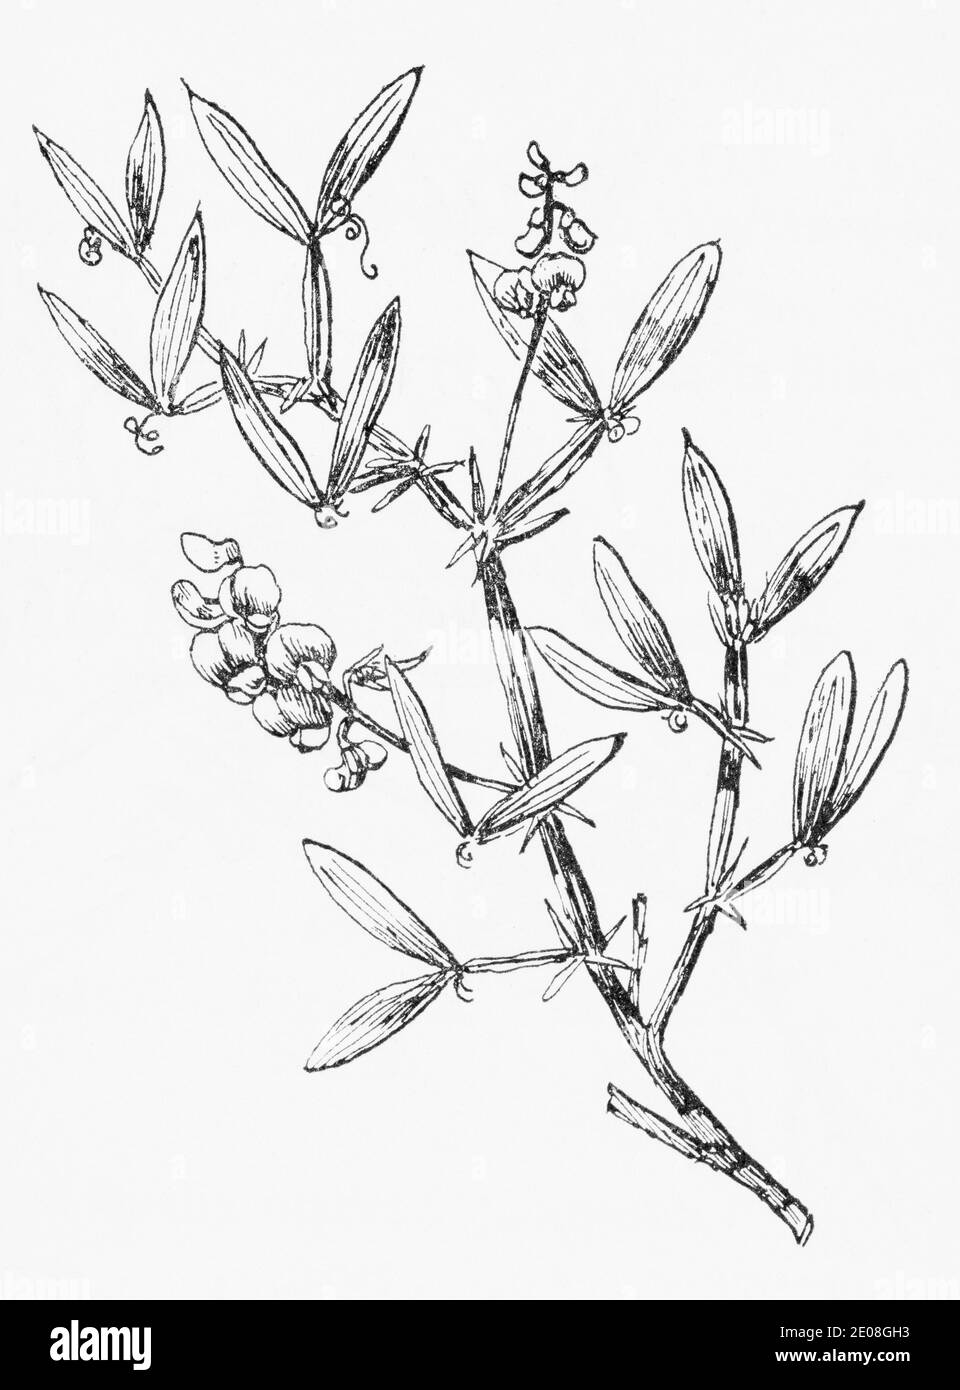 Alte botanische Illustration Gravur von schmal-blättrigen ewigen Erbsen, Holz Erbse, flache Erbse / Lathyrus sylvestris. Siehe Hinweise Stockfoto